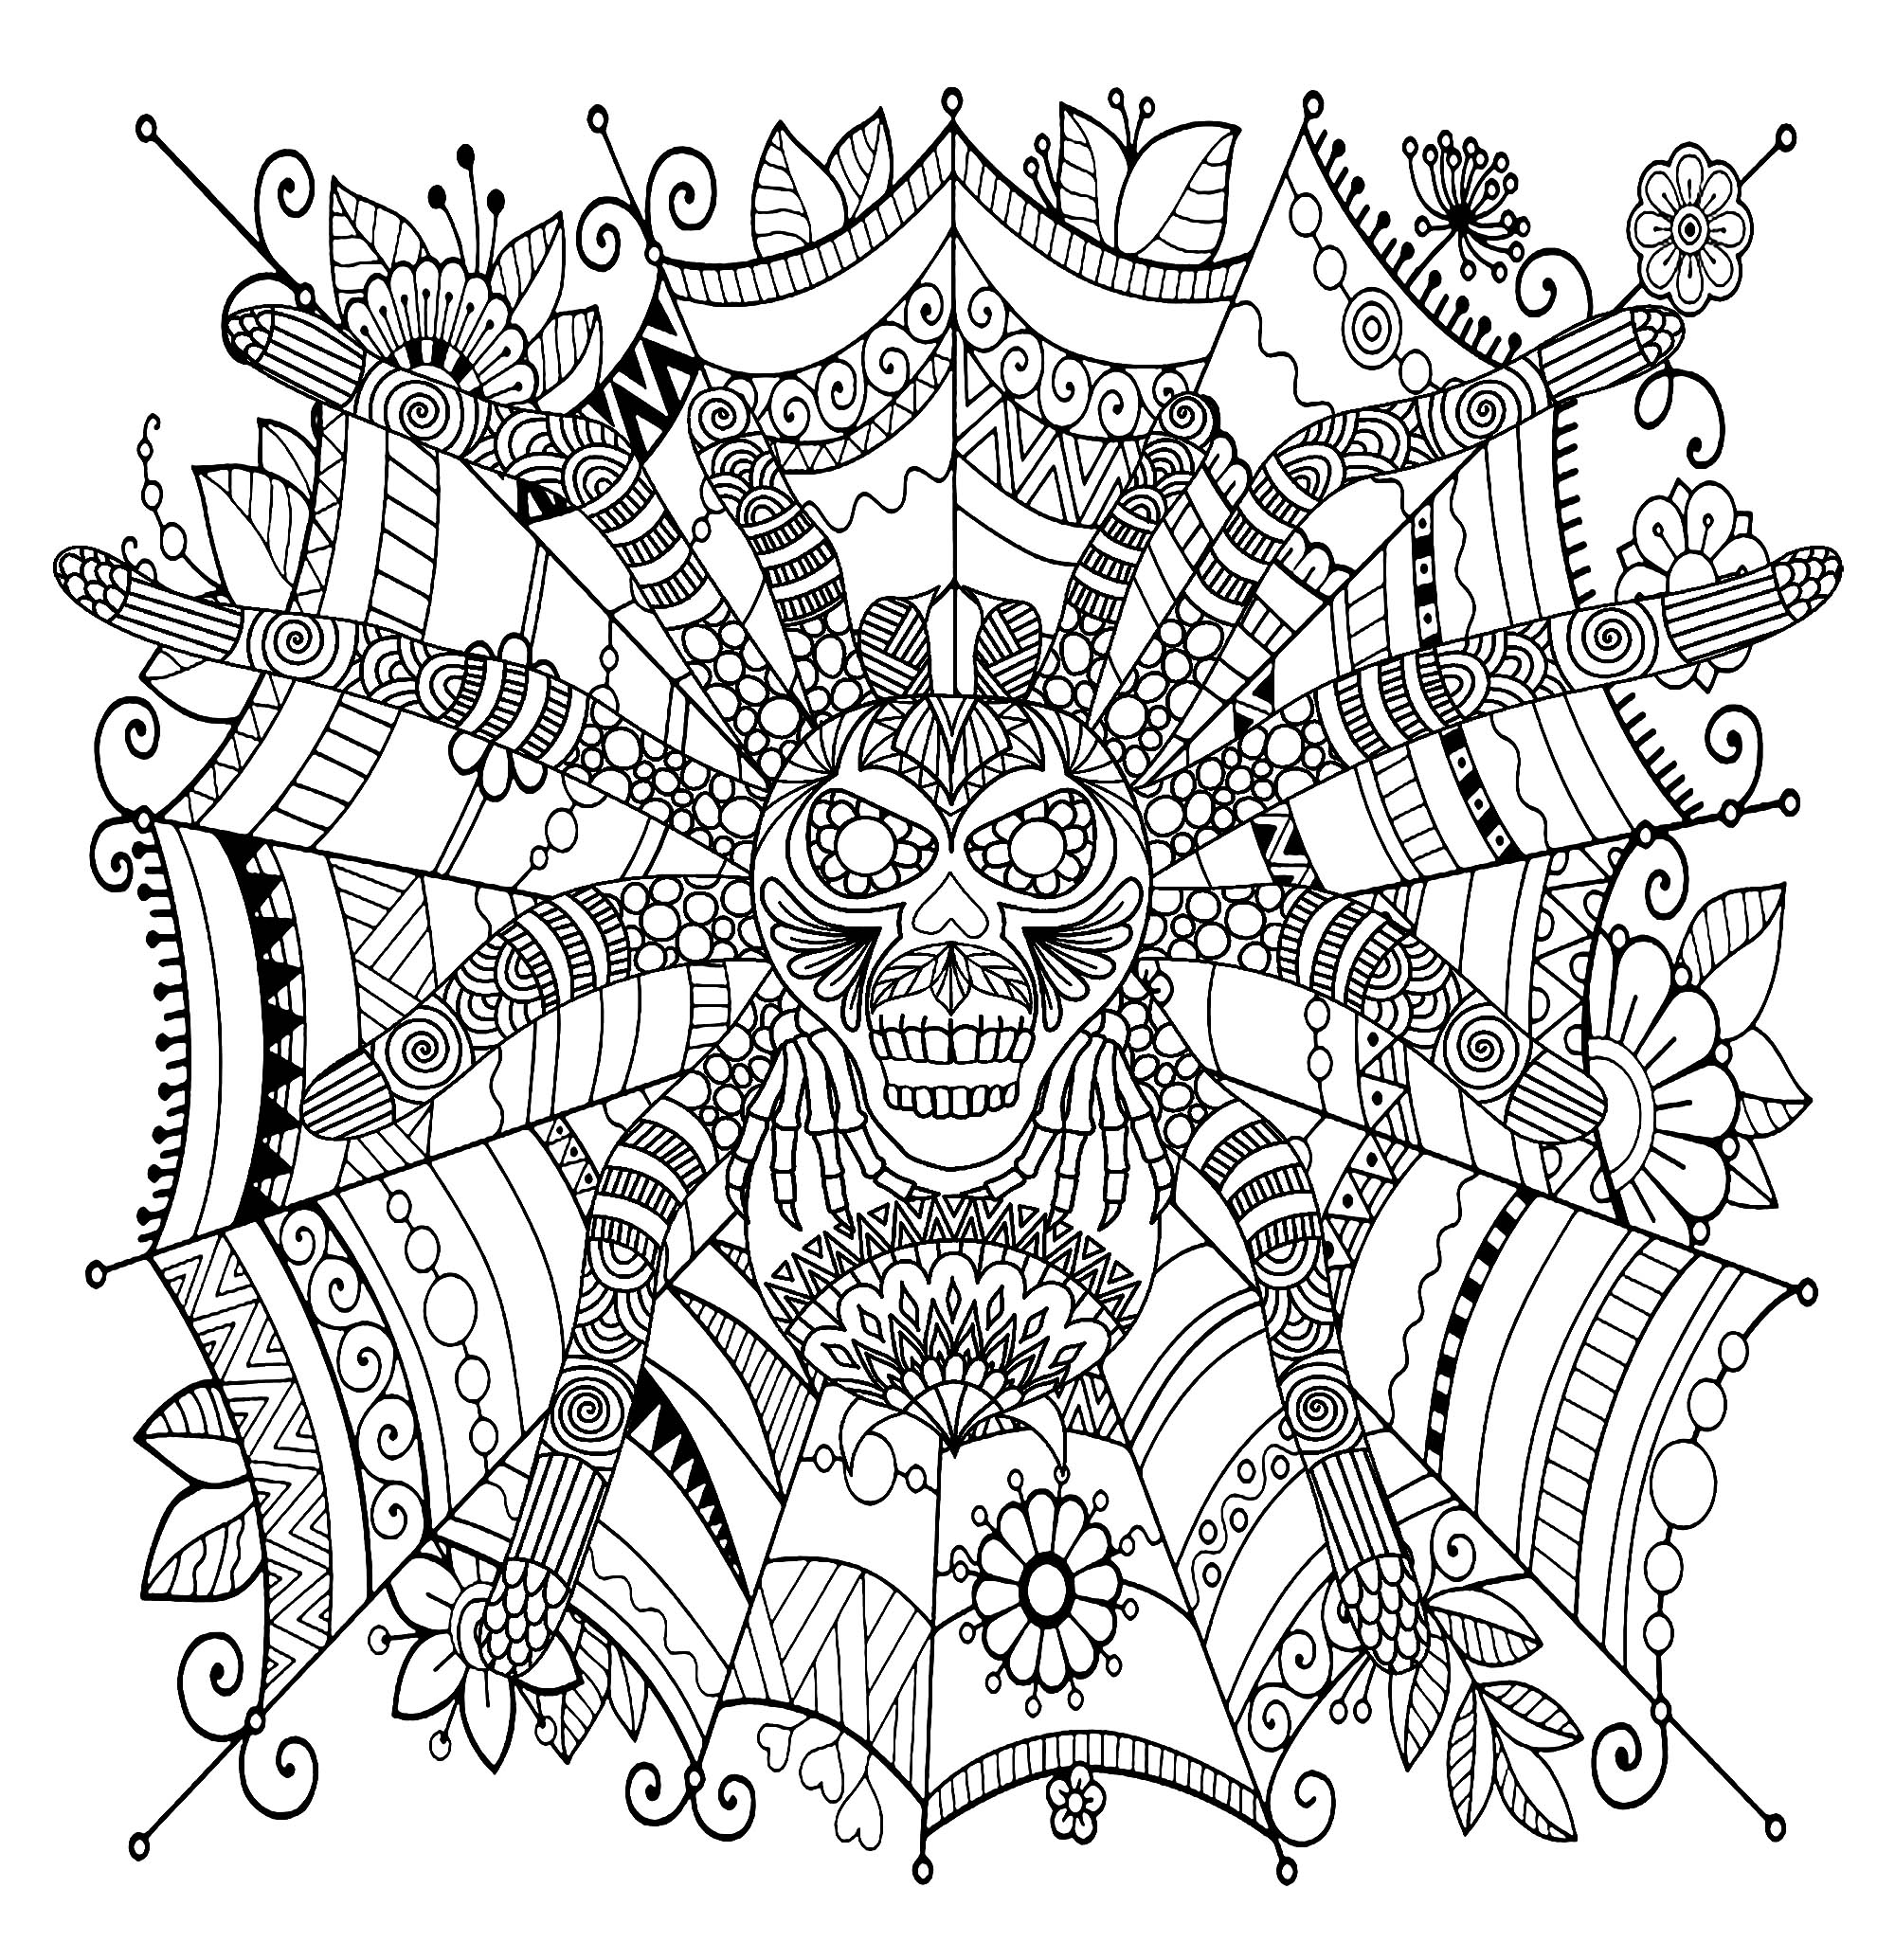 Aranha lindamente decorada numa teia com padrão Zentangle, Artista : Art'Isabelle